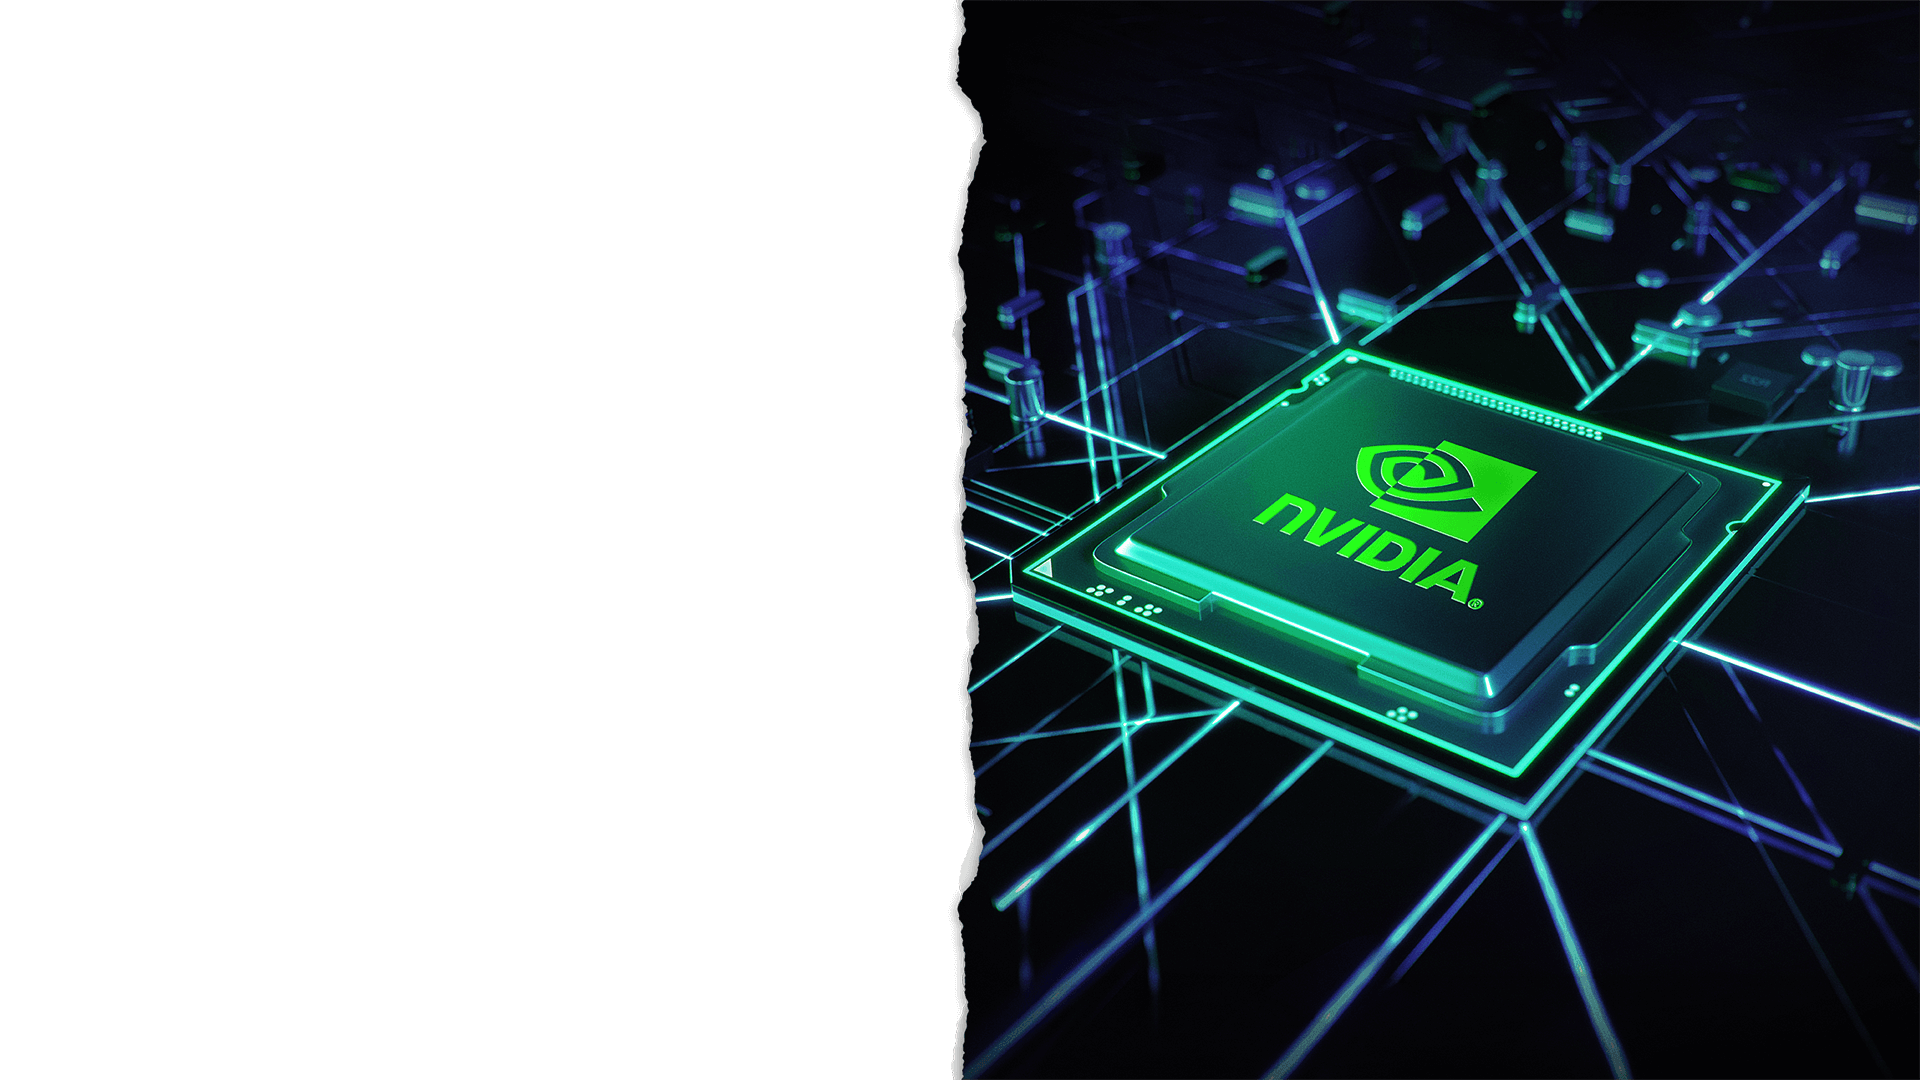 Le die du GPU NVIDIA GeForce RTX sur un PCB, alimenté en électricité.